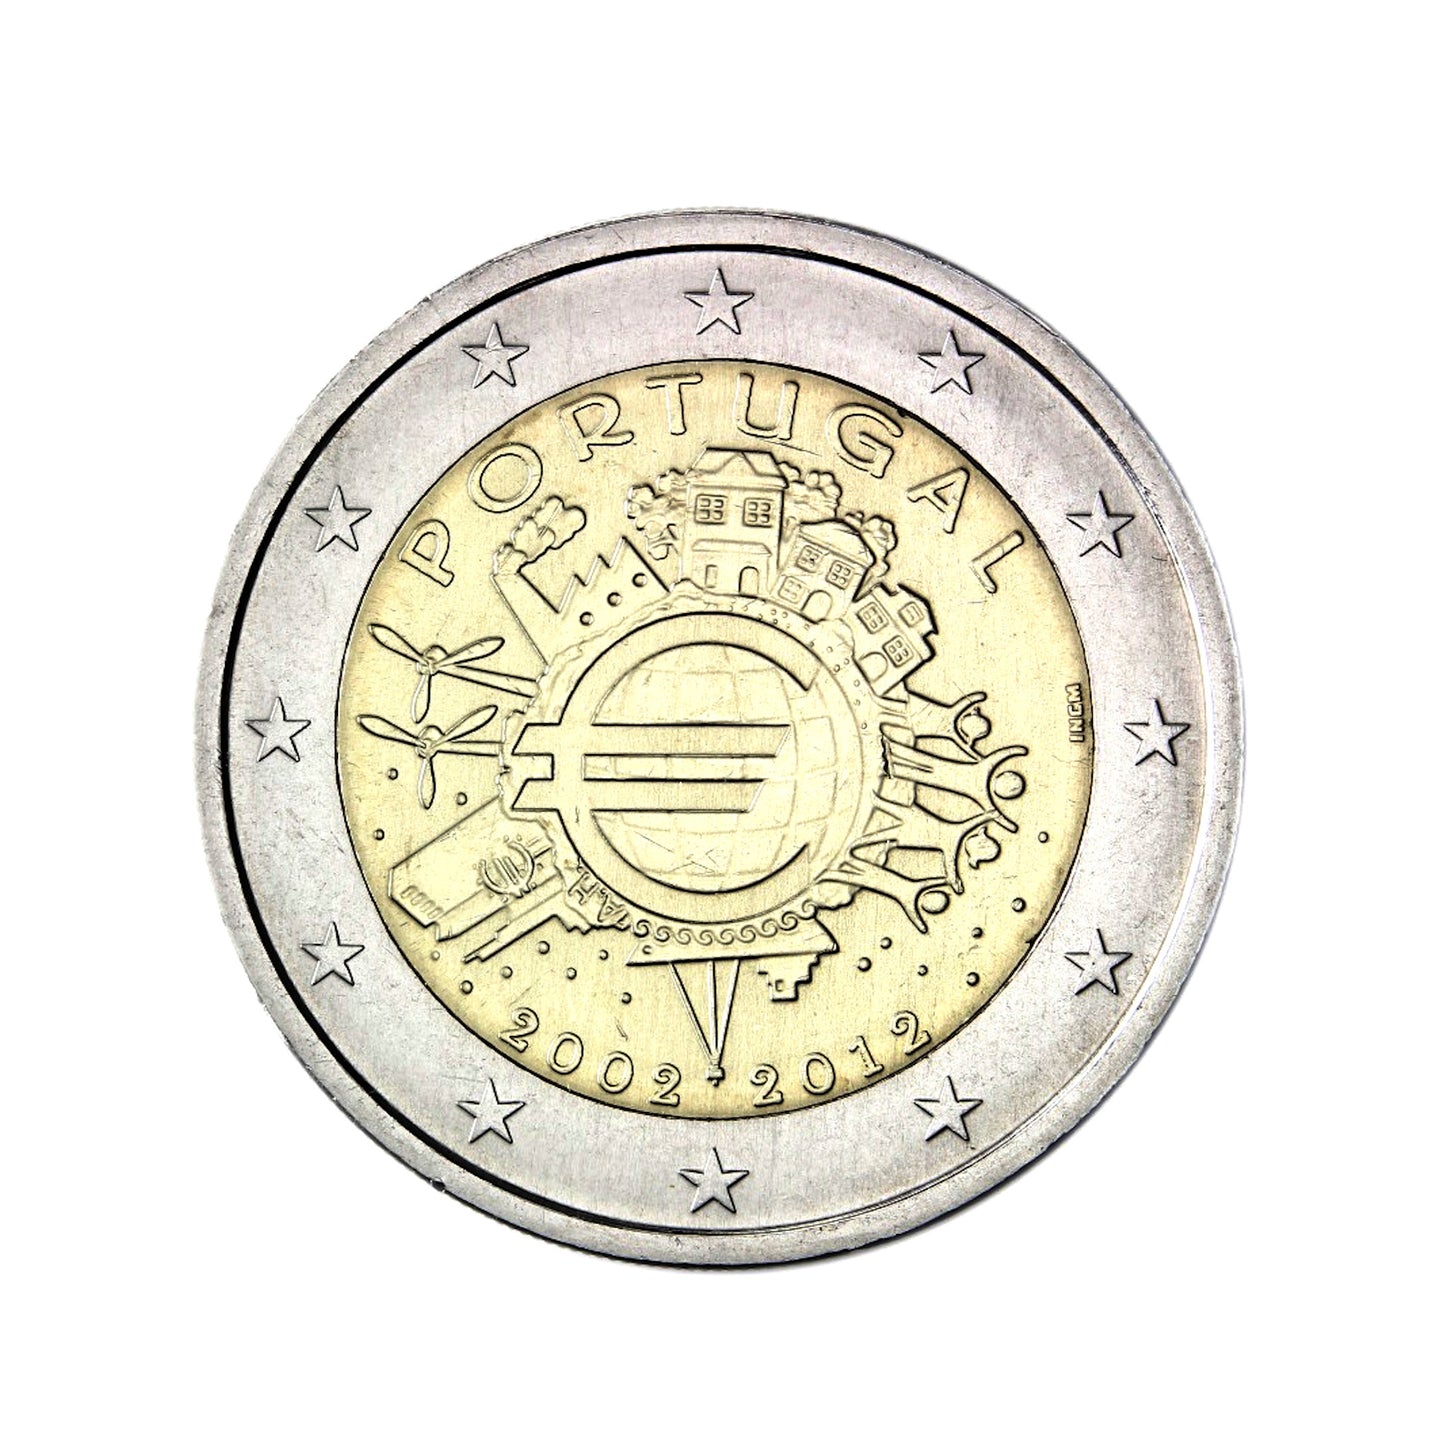 Portugal - Moneda 2 euros conmemorativa 2012 - Diez años del Euro